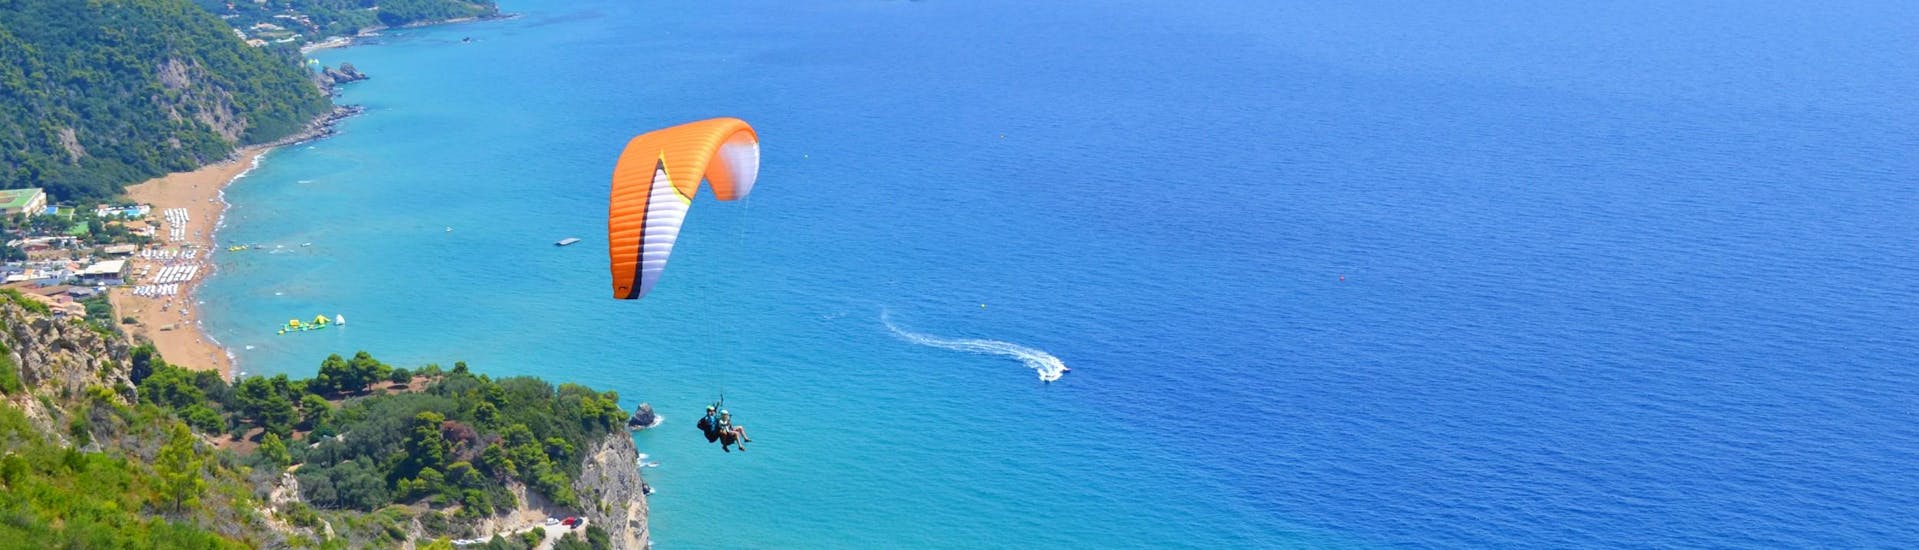 Ein  Tandempilot von Corfu Paragliding und sein Passagier gleiten bei einem Tandemflug über das türkisfarbene Wasser des Ionischen Meeres.